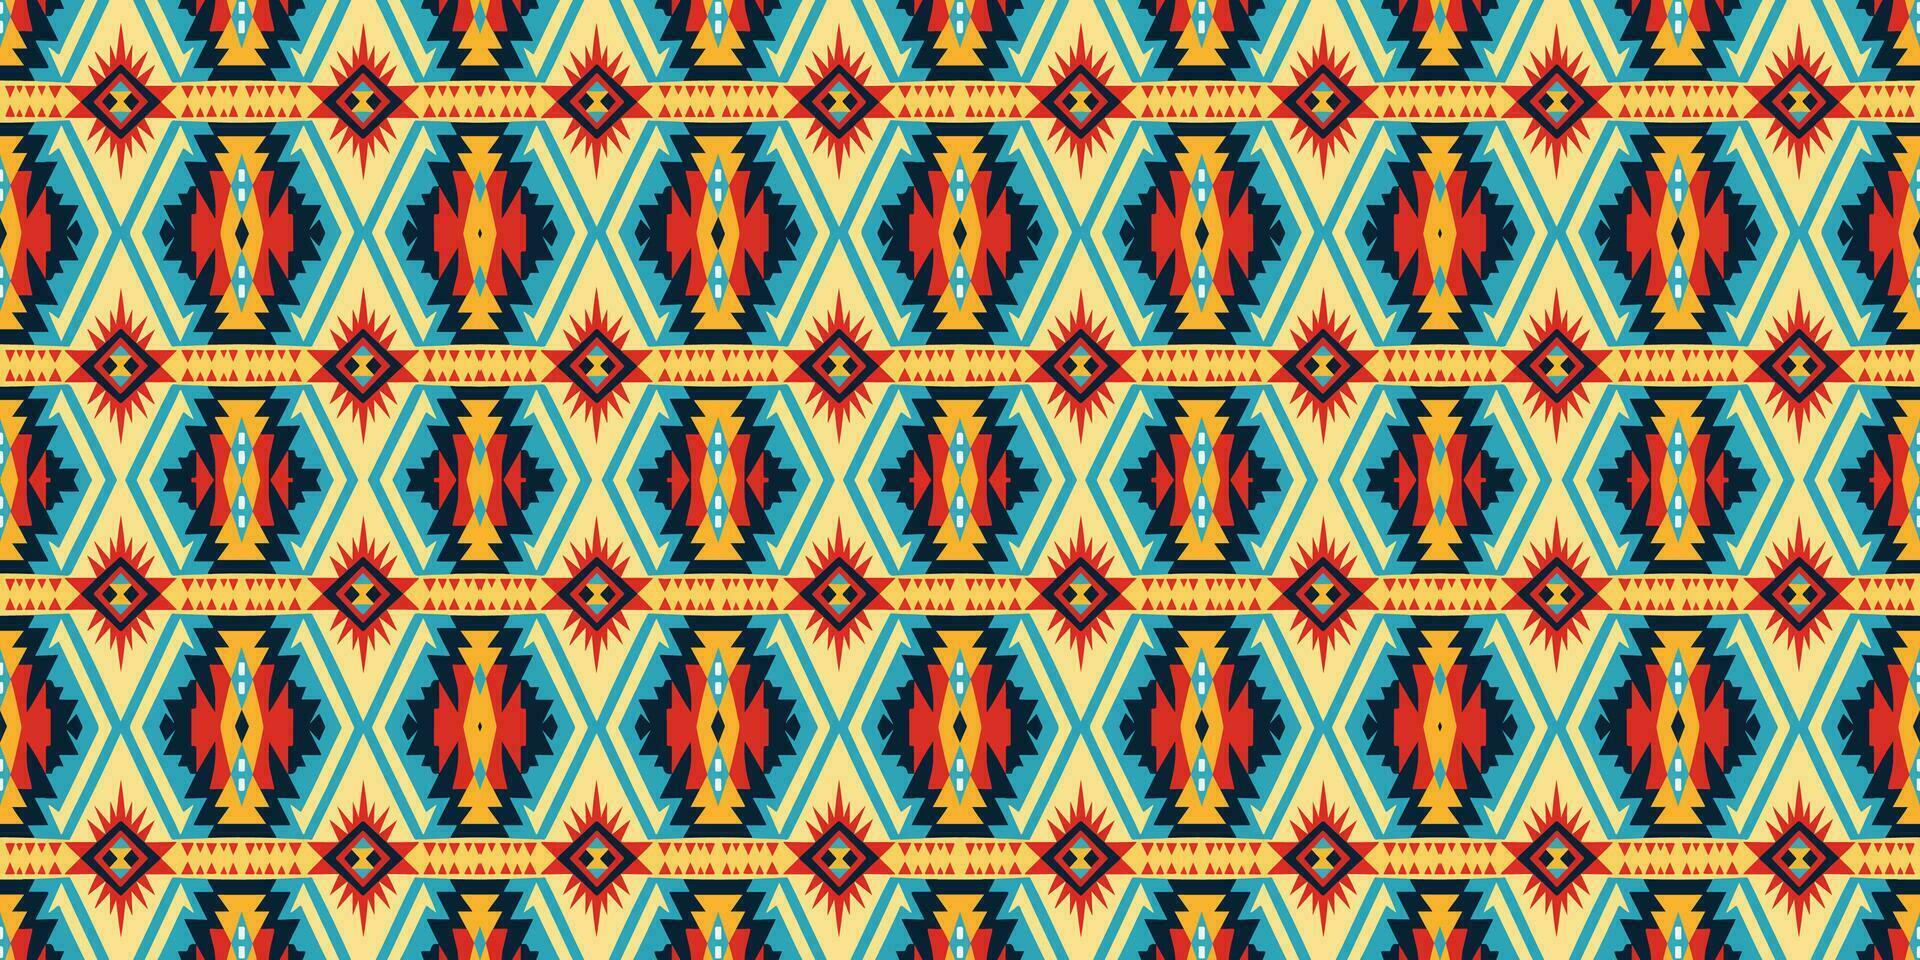 naadloos batik patroon, naadloos tribal batik patroon, en naadloos motief patroon lijken op etnisch boho, Azteken, en ikat stijlen.ontworpen voor gebruik in satijn, behang, stof, gordijn, tapijt, batik borduurwerk vector